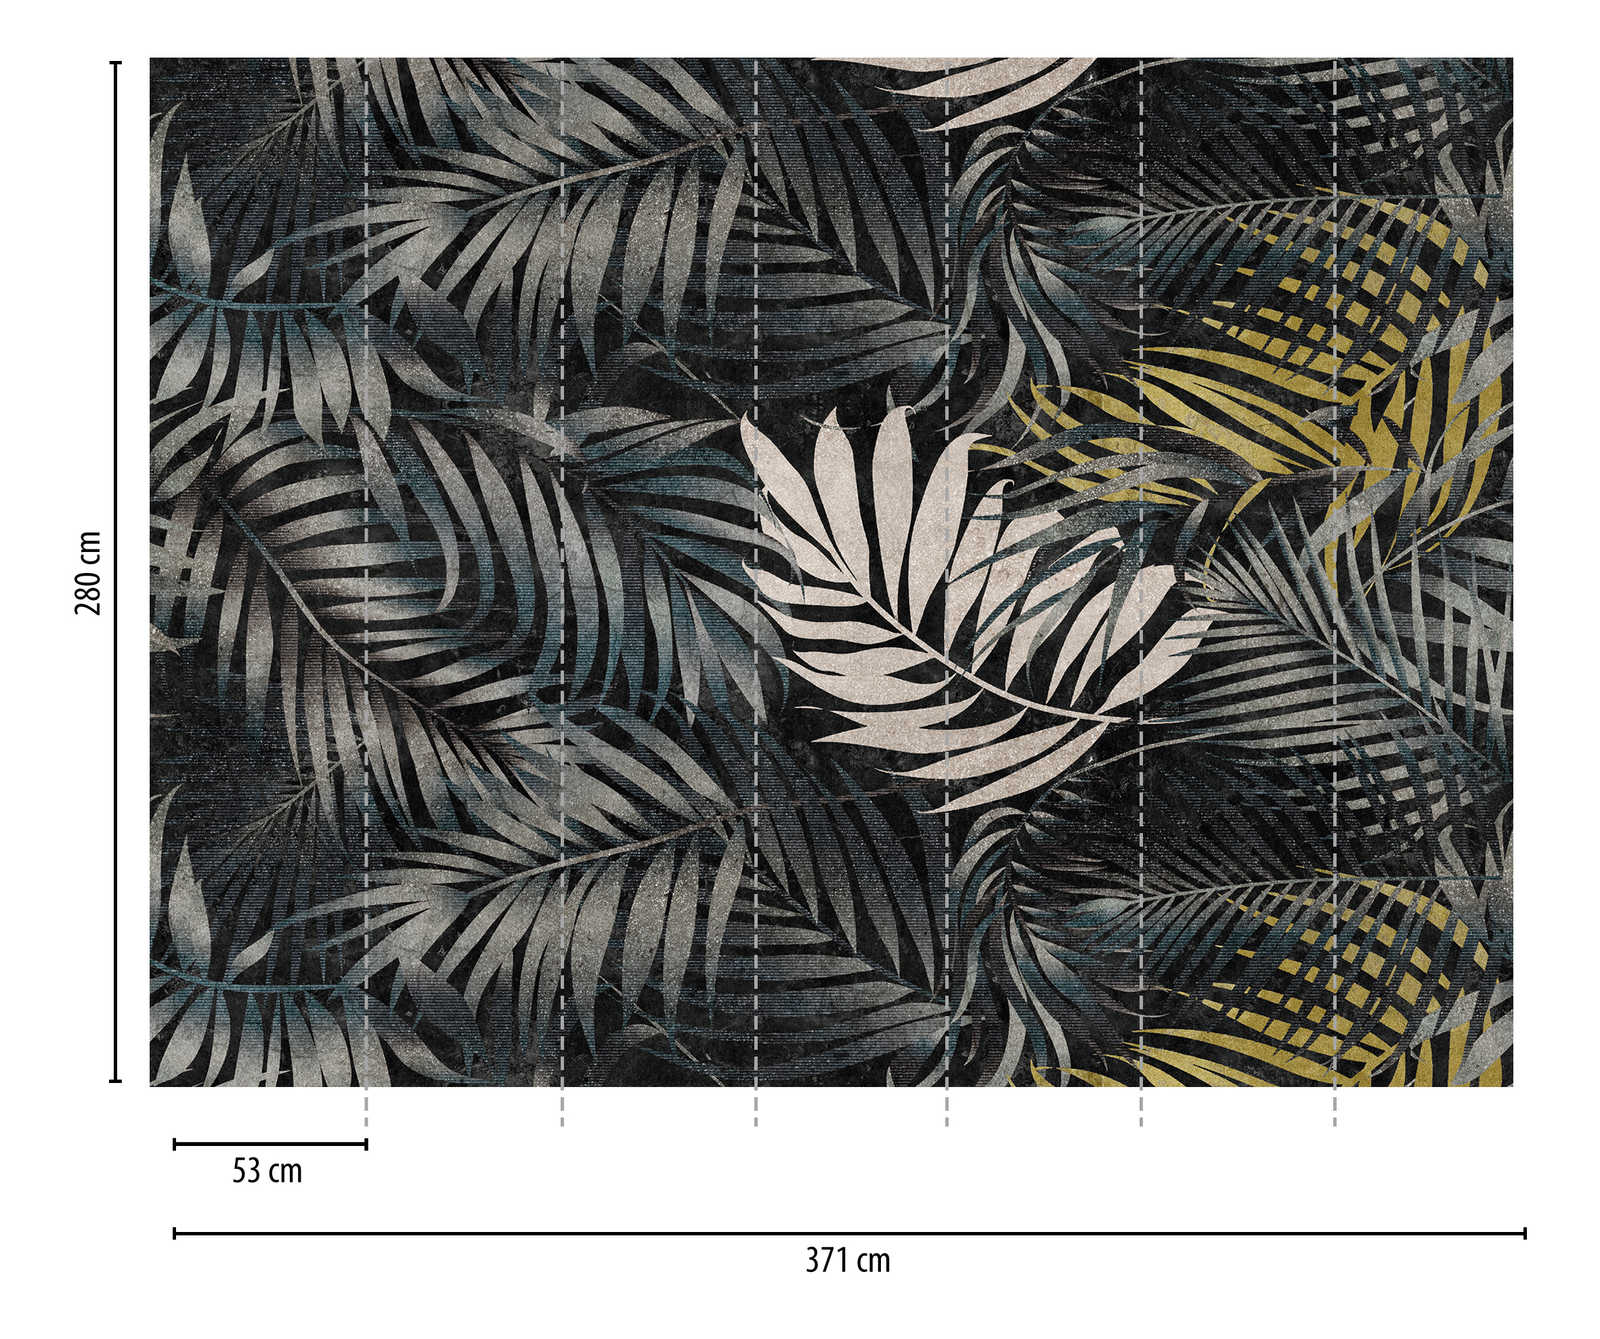             papel pintado novedad | papel pintado motivo hojas XXL en hawaiano look retro
        